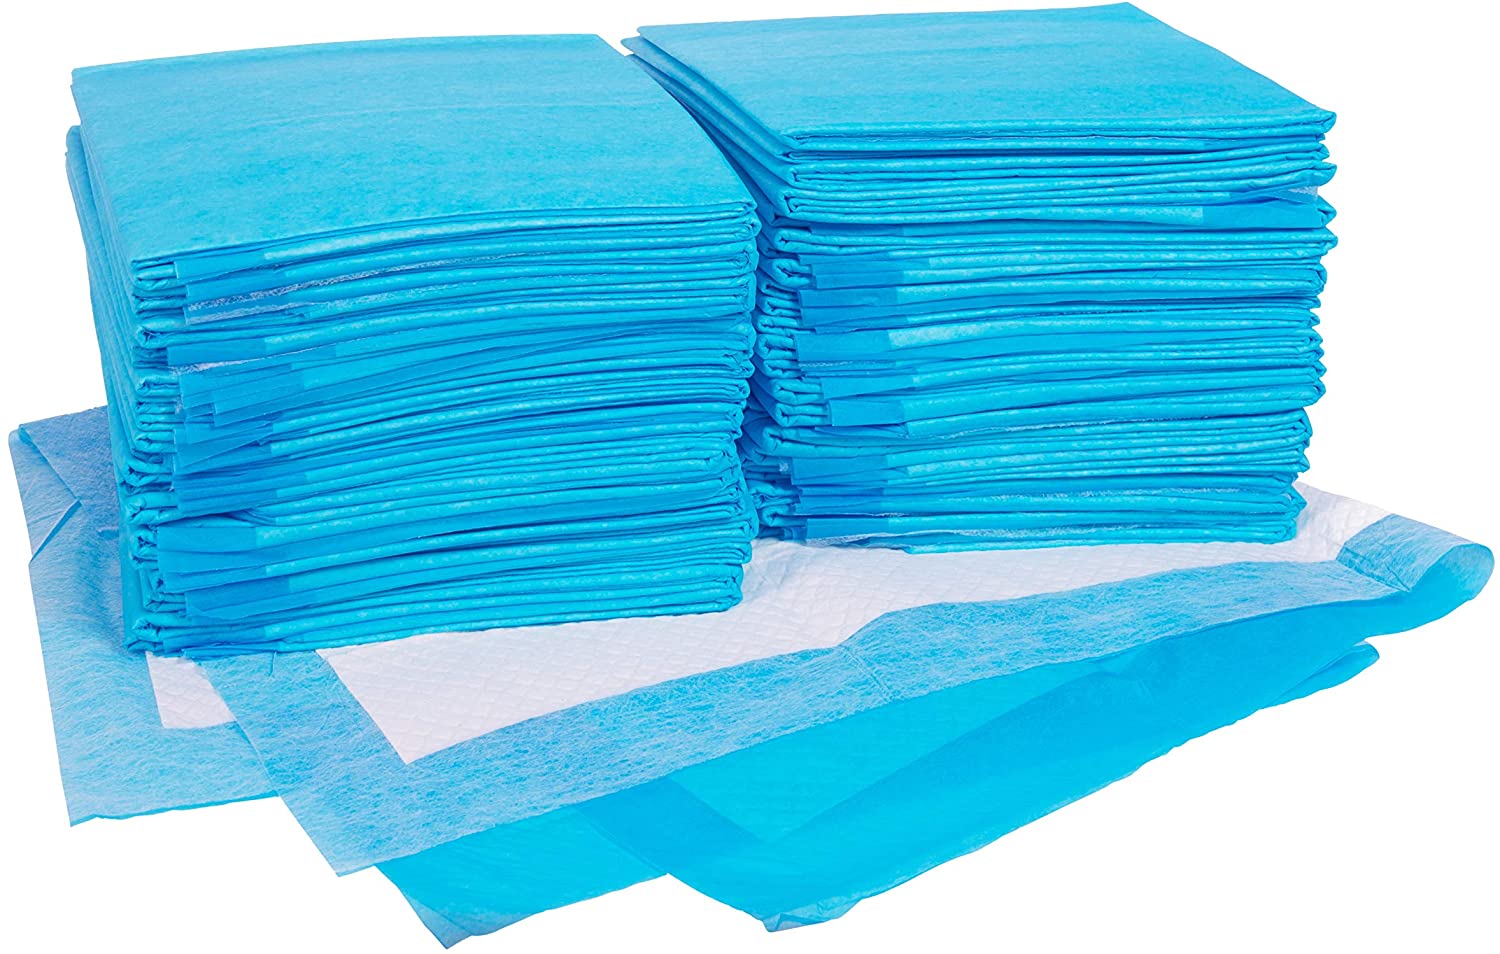 target brand disposable mattress pads